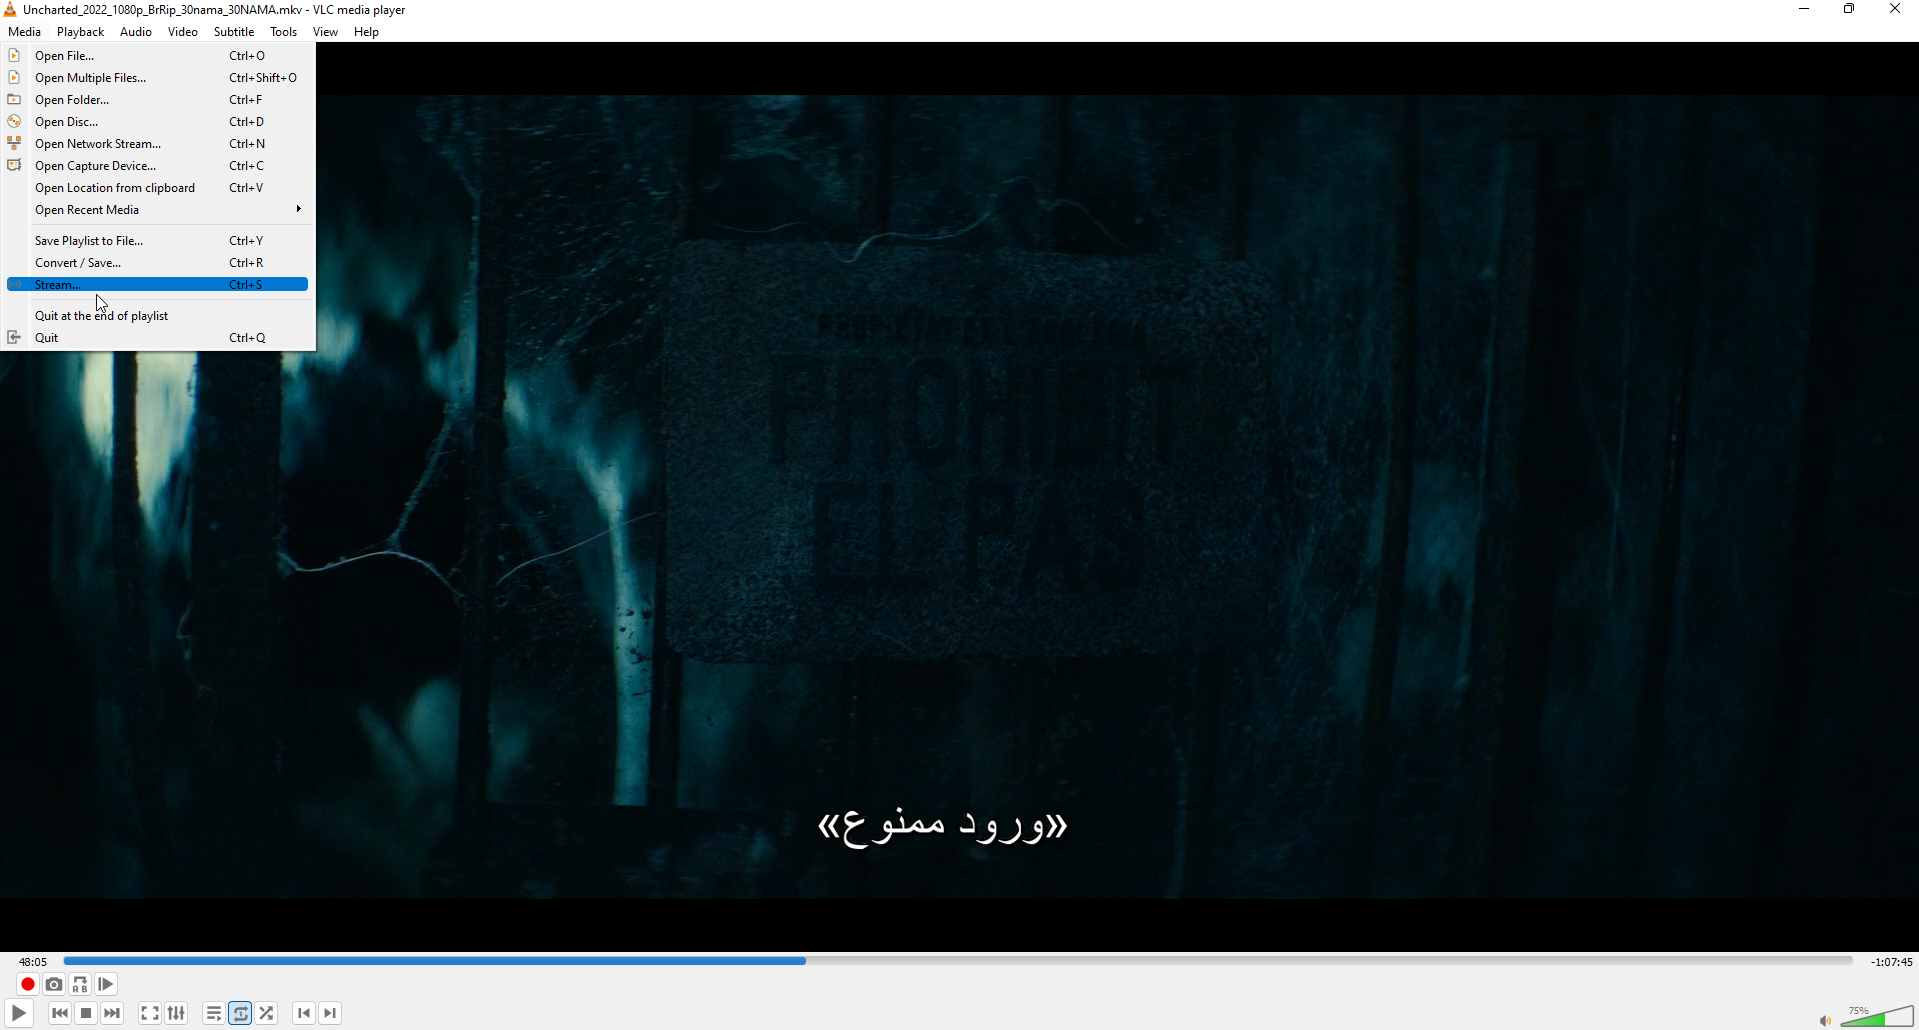 فیلمی با زیرنویس فارسی در VLC در حال پخش است